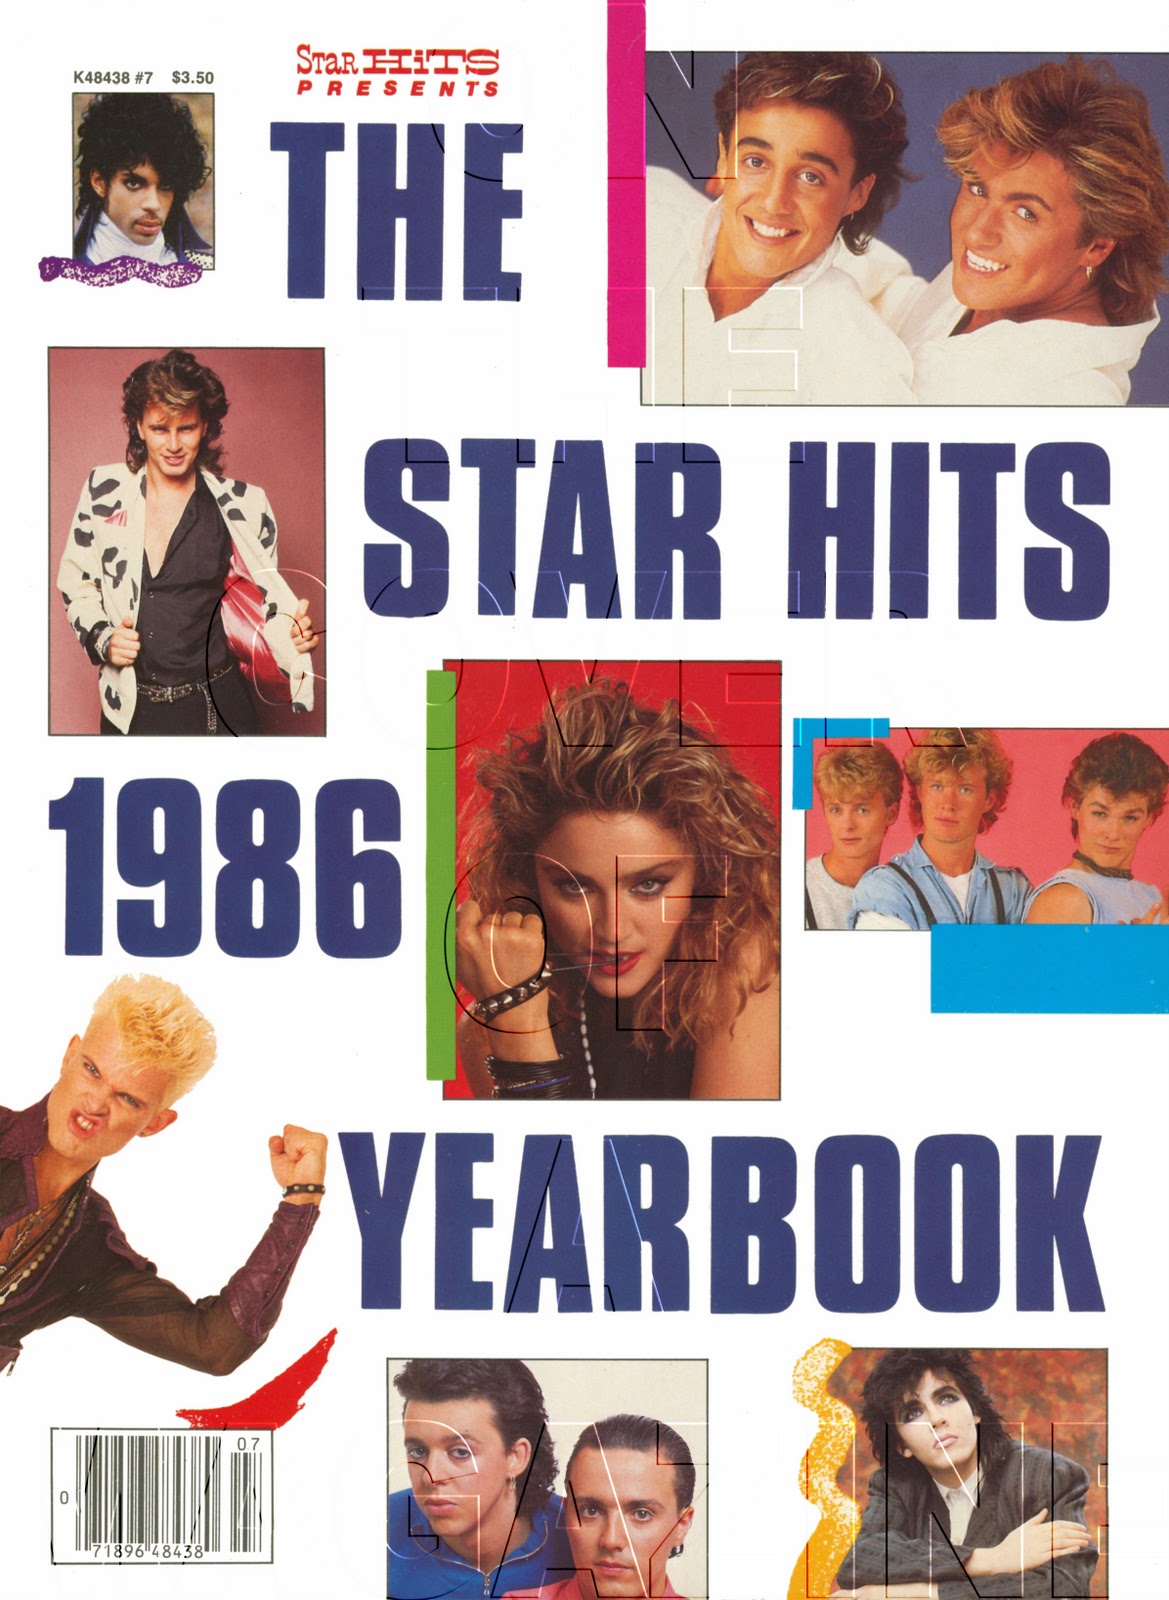 Uk Music Charts 1986